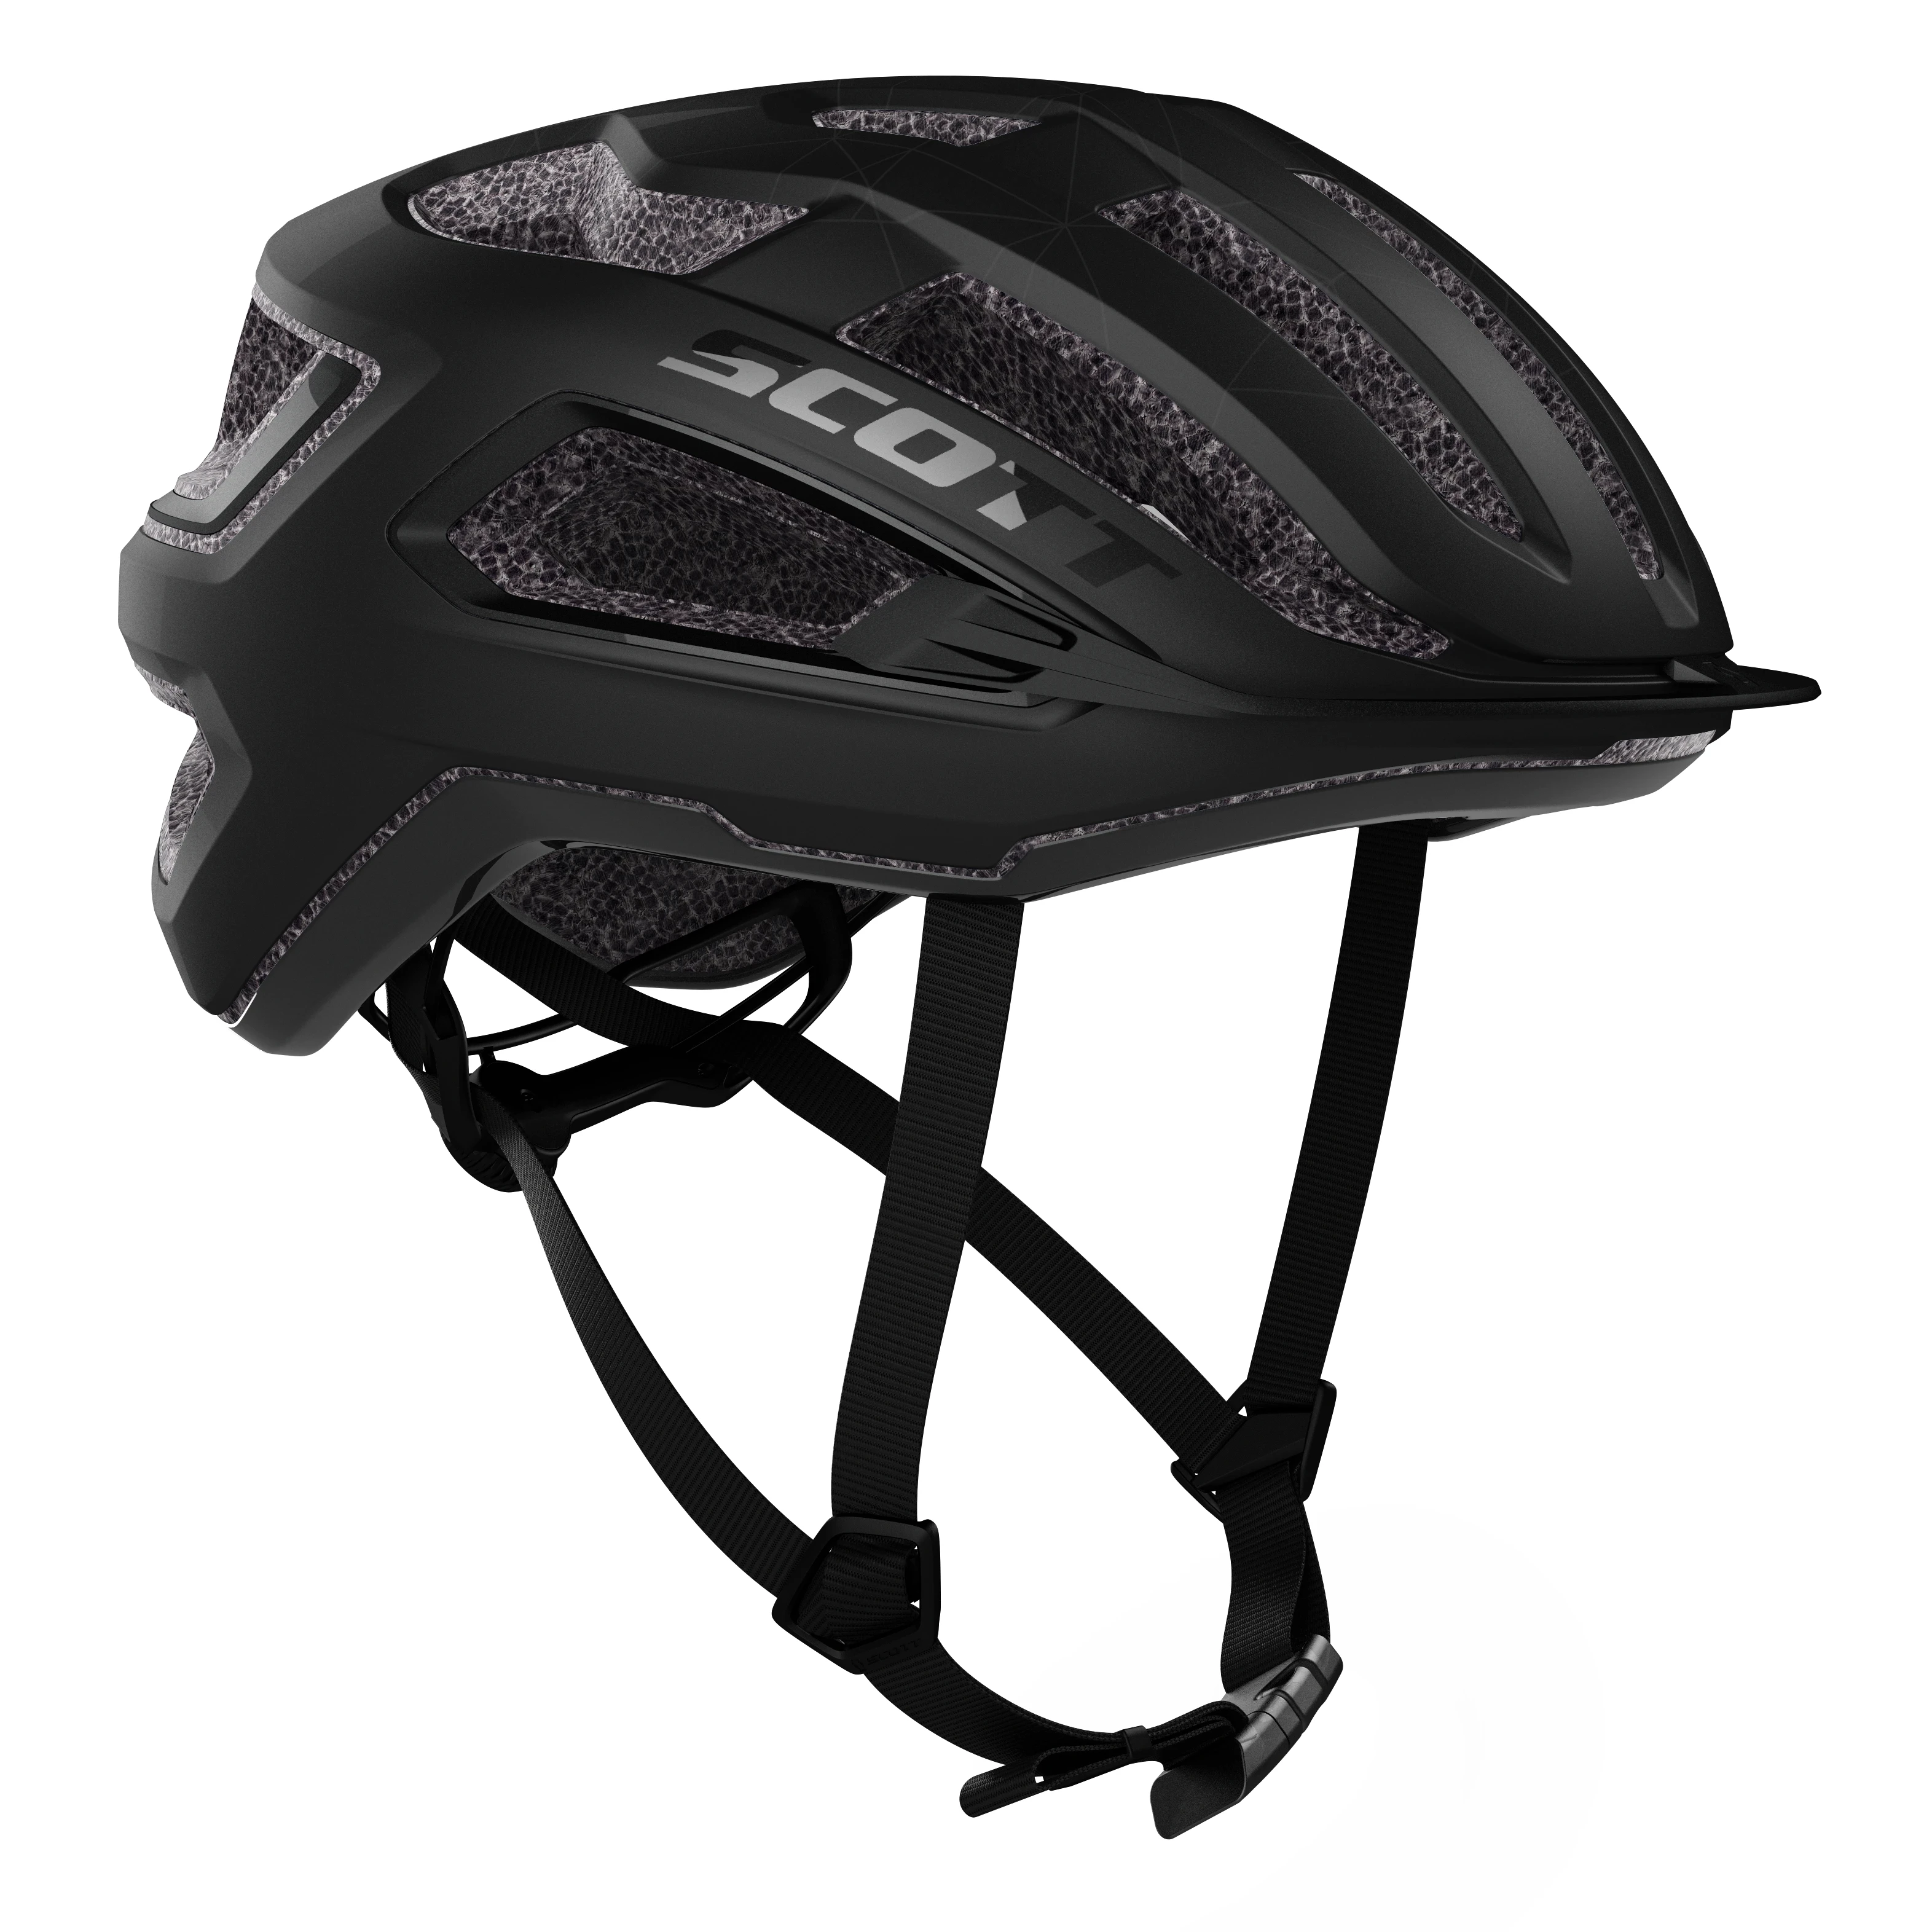 Scott Arx Bicycle Helmet